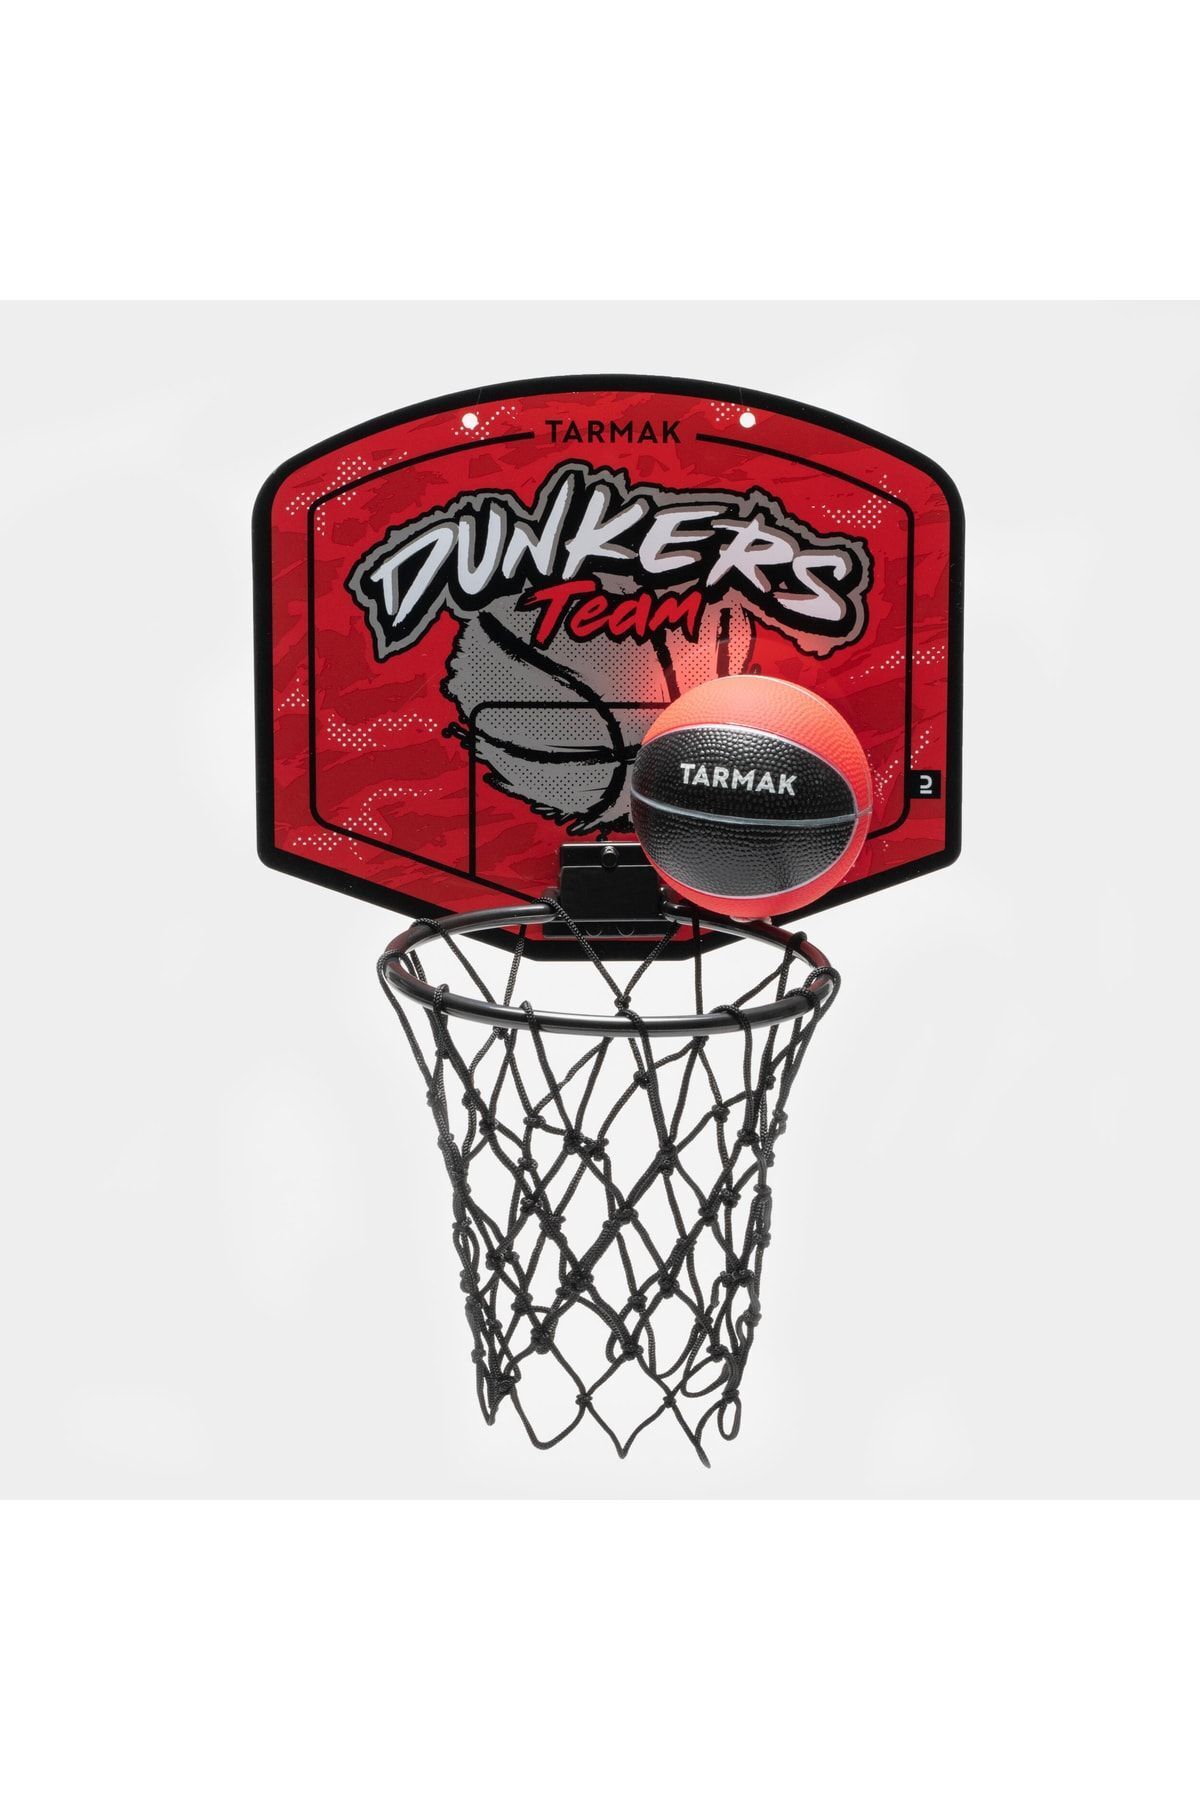 Decathlon Tarmak Çocuk / Yetişkin Mini Basketbol Potası - Kırmızı / Gümüş - Sk100 Dunkers